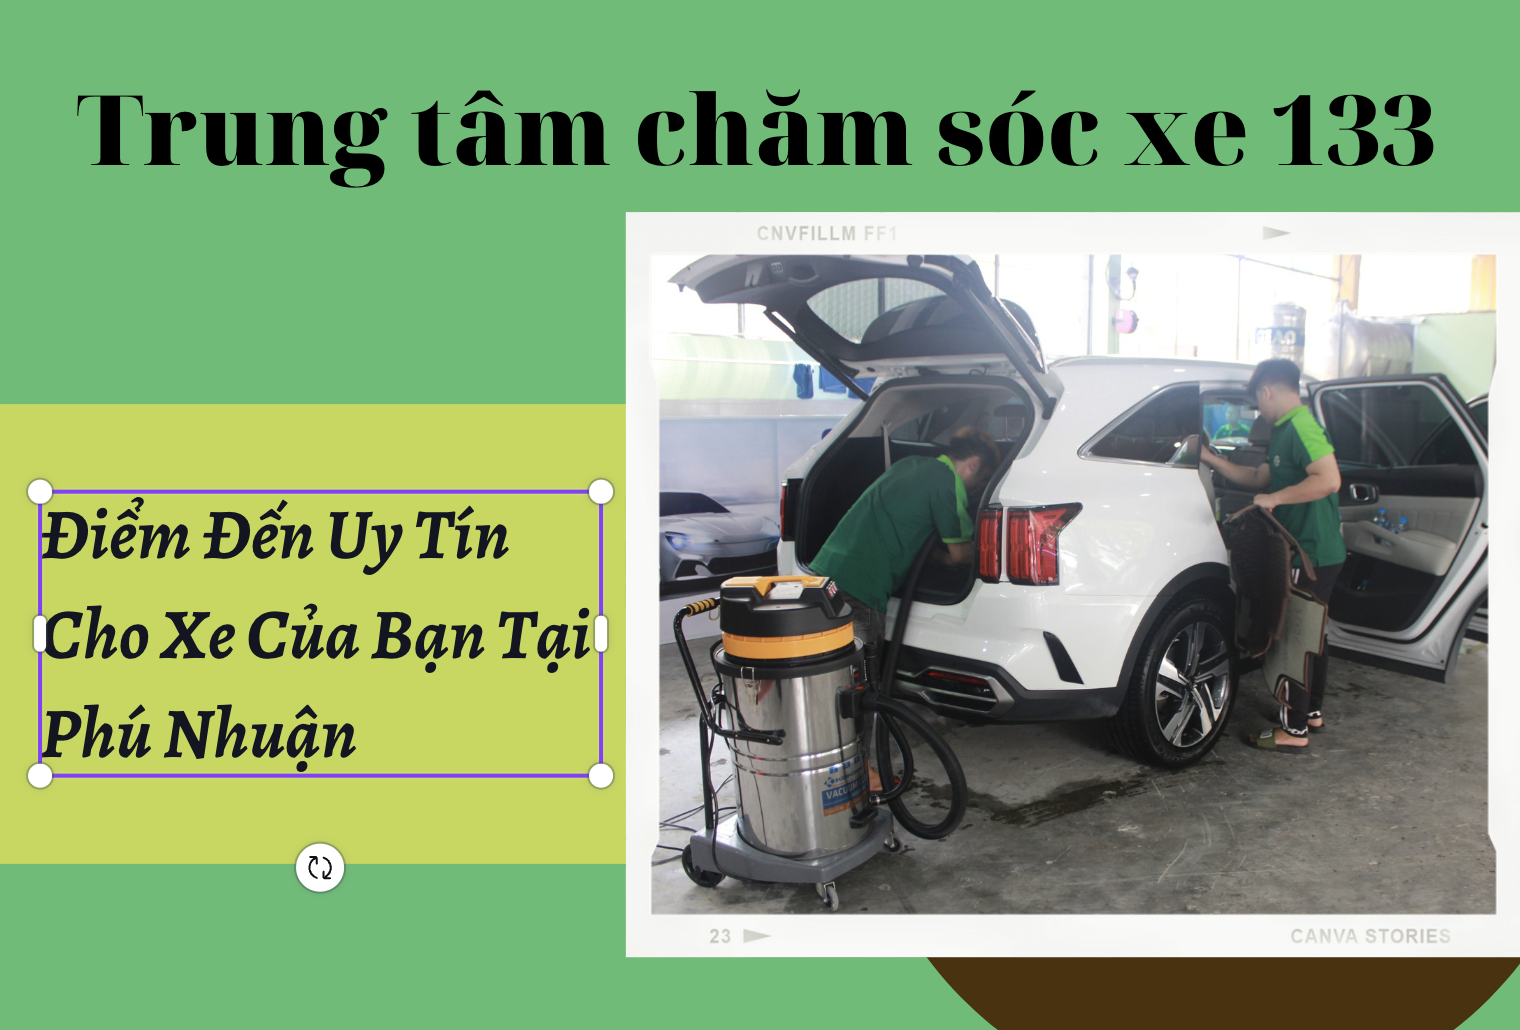 Đơn vị chăm sóc xe ô tô tốt nhất Phú Nhuận - Trung Tâm Chăm Sóc Xe 133